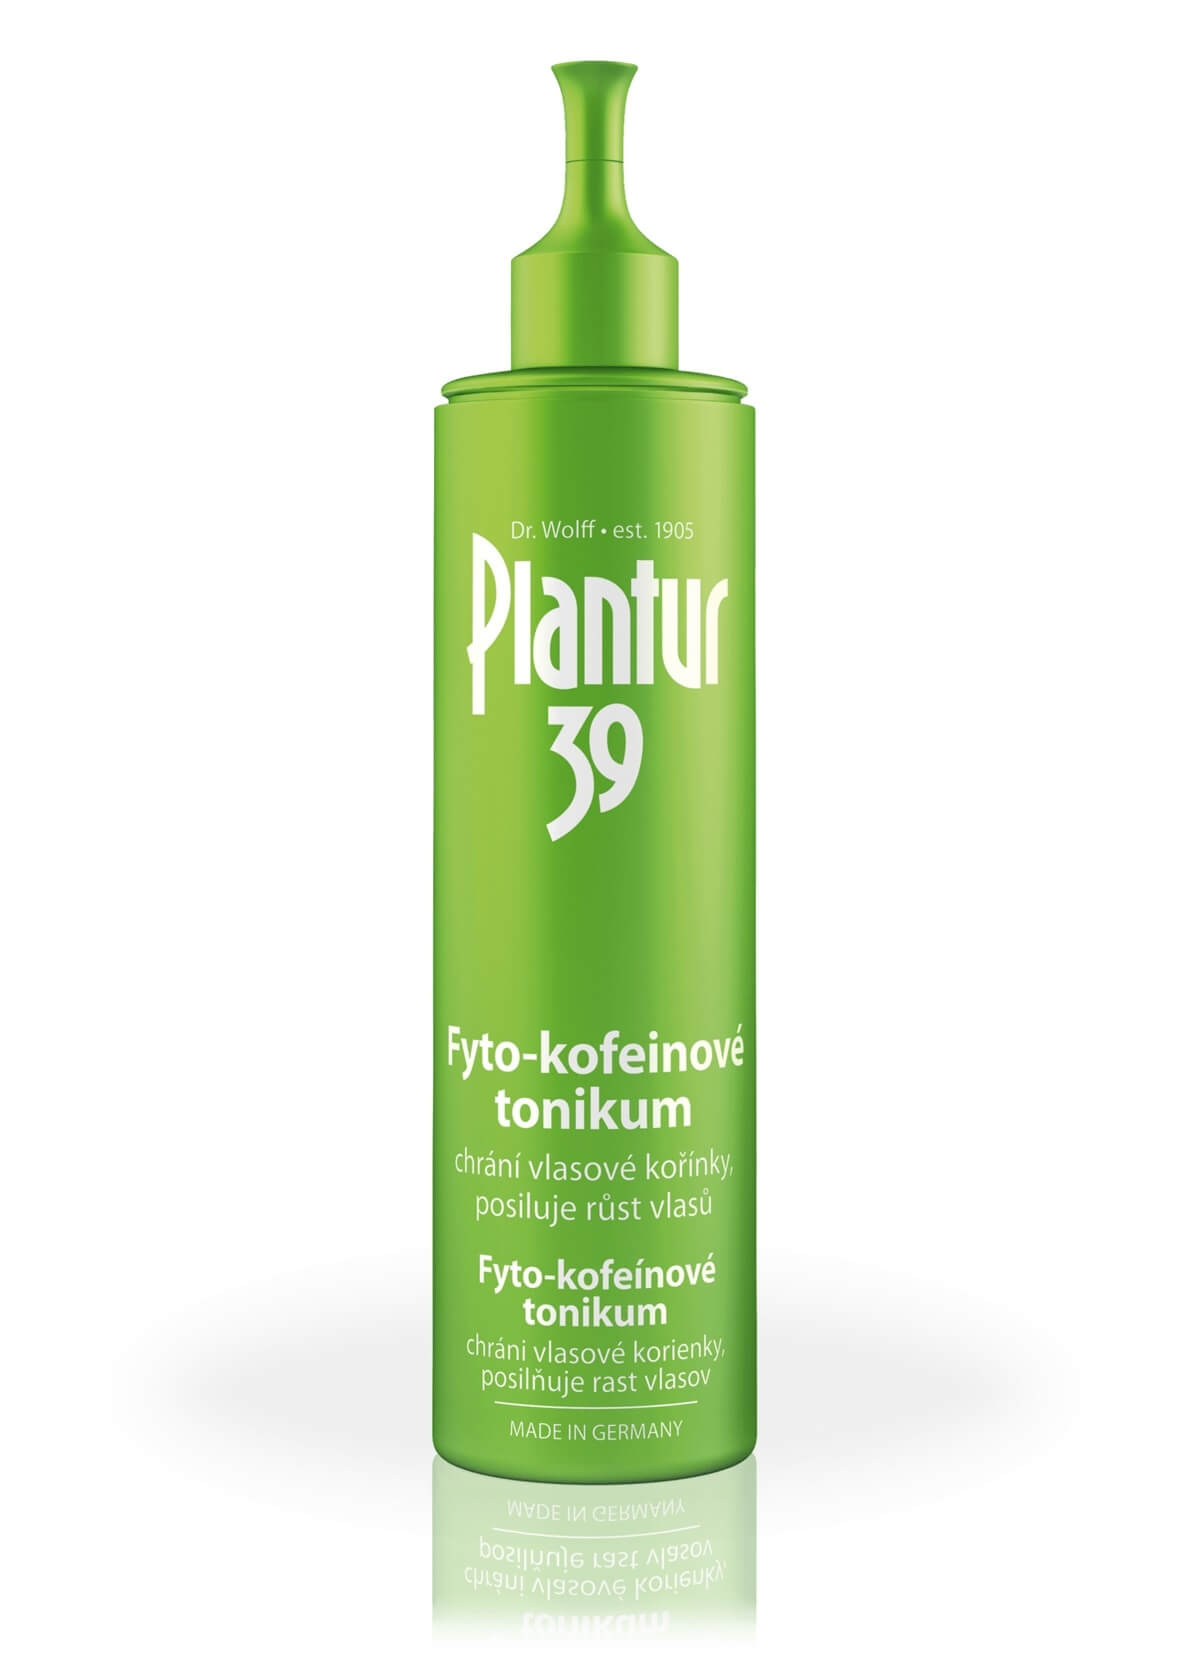 Plantur Fyto-kofeinove tonikum pro podporu růstu vlasů 200 ml